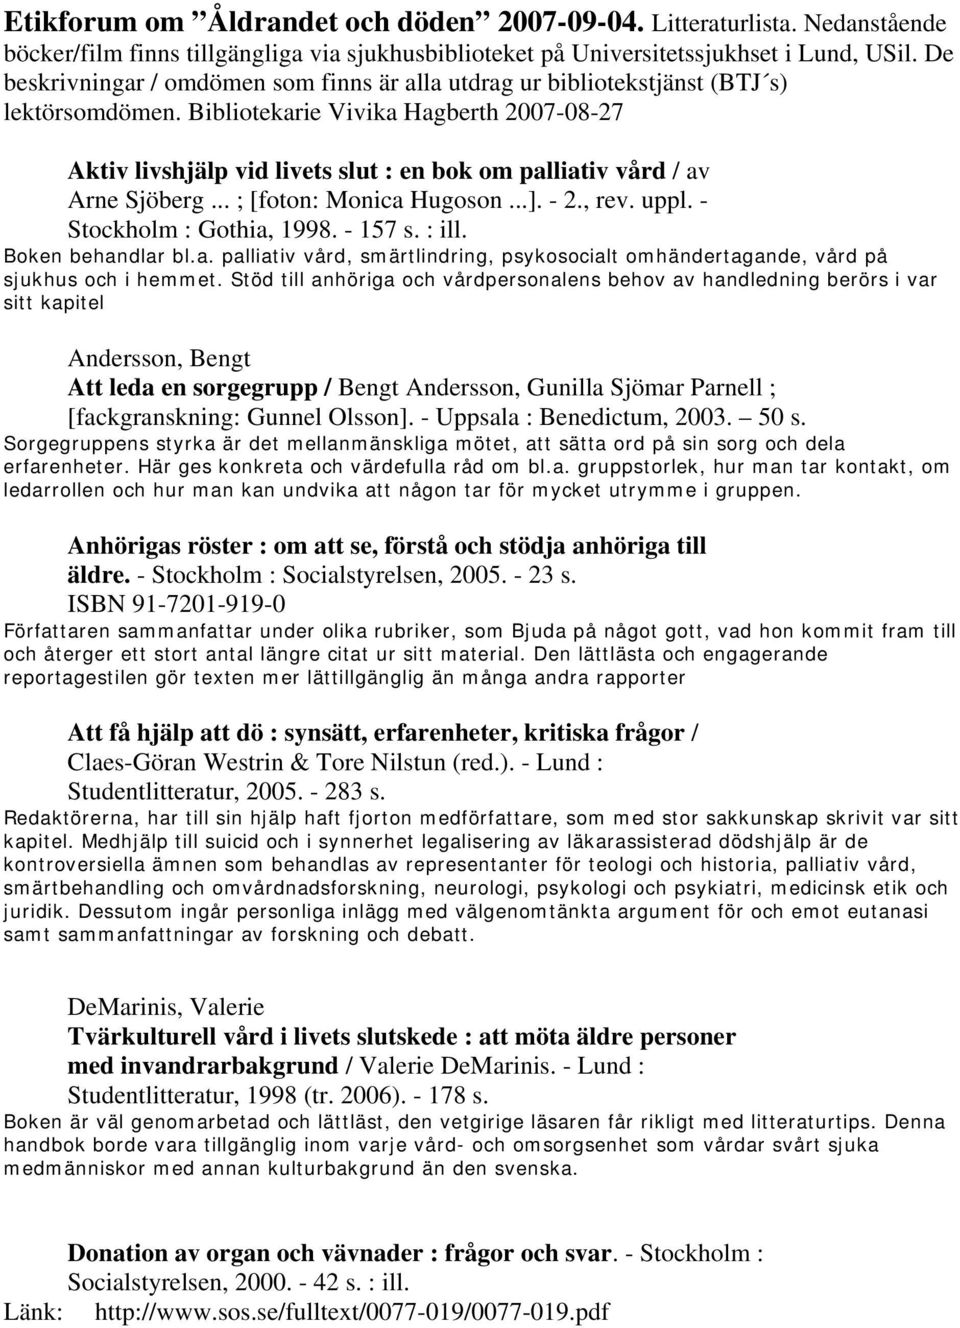 Bibliotekarie Vivika Hagberth 2007-08-27 Aktiv livshjälp vid livets slut : en bok om palliativ vård / av Arne Sjöberg... ; [foton: Monica Hugoson...]. - 2., rev. uppl. - Stockholm : Gothia, 1998.